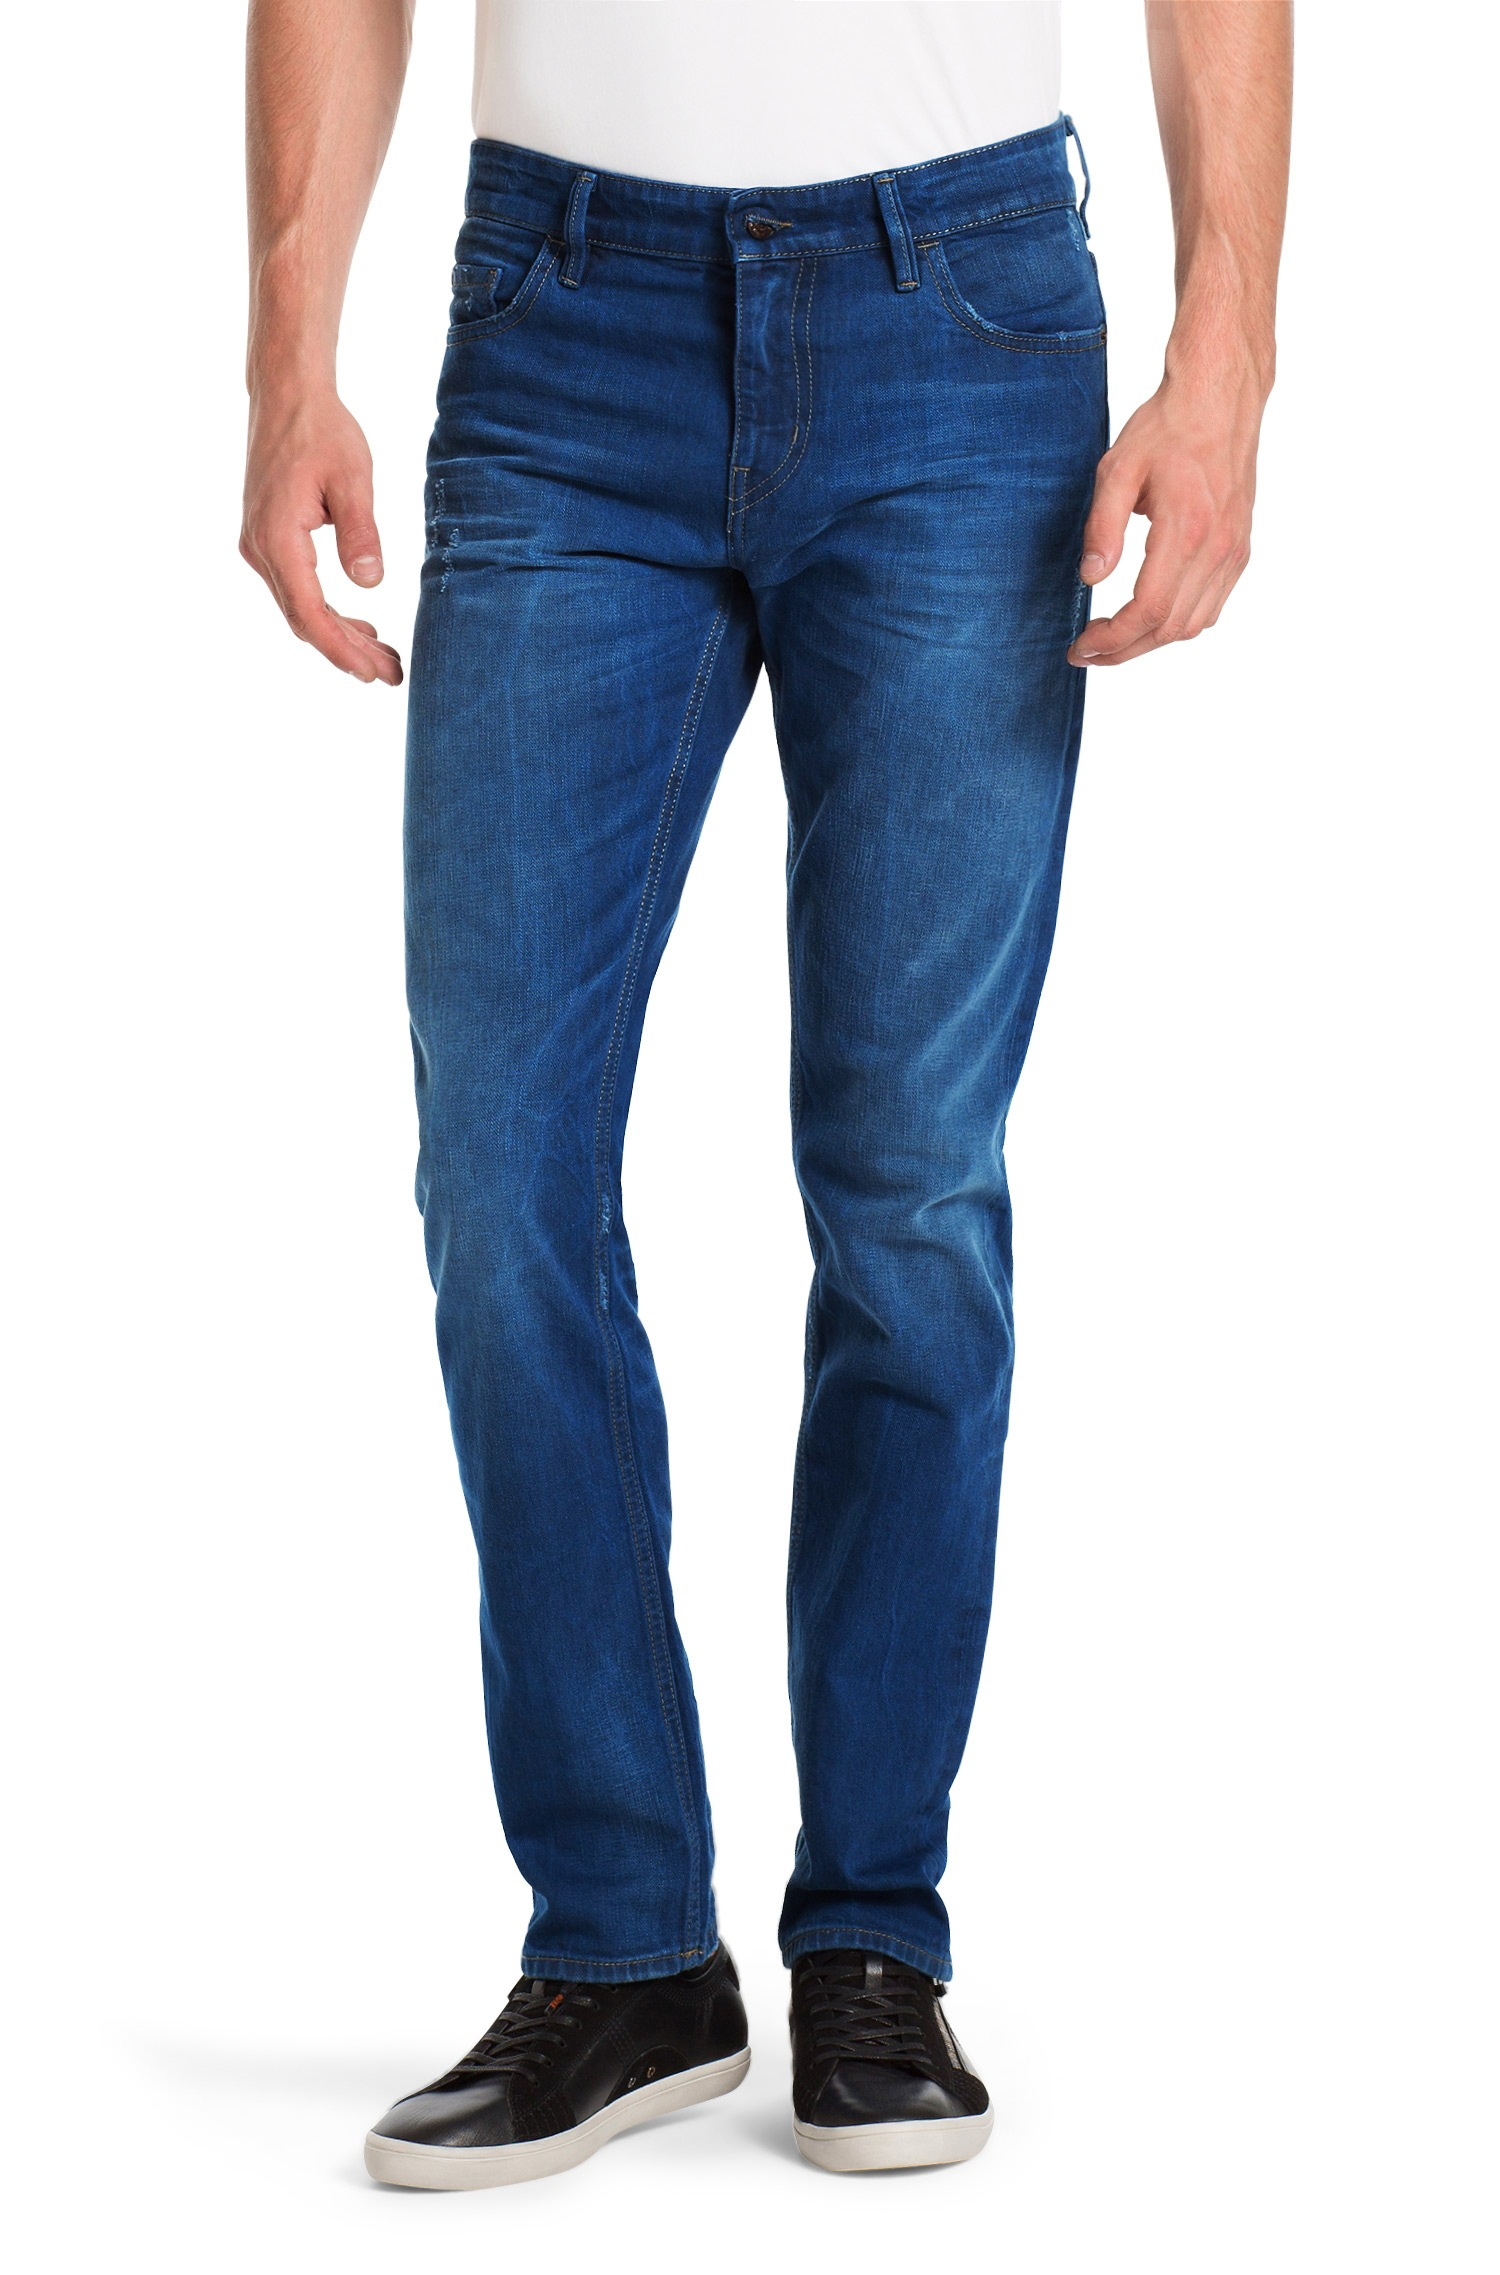 BOSS Orange Slim-Fit Jeans 'Orange 71 Oslo' In Cotton in Blue for Men - Lyst